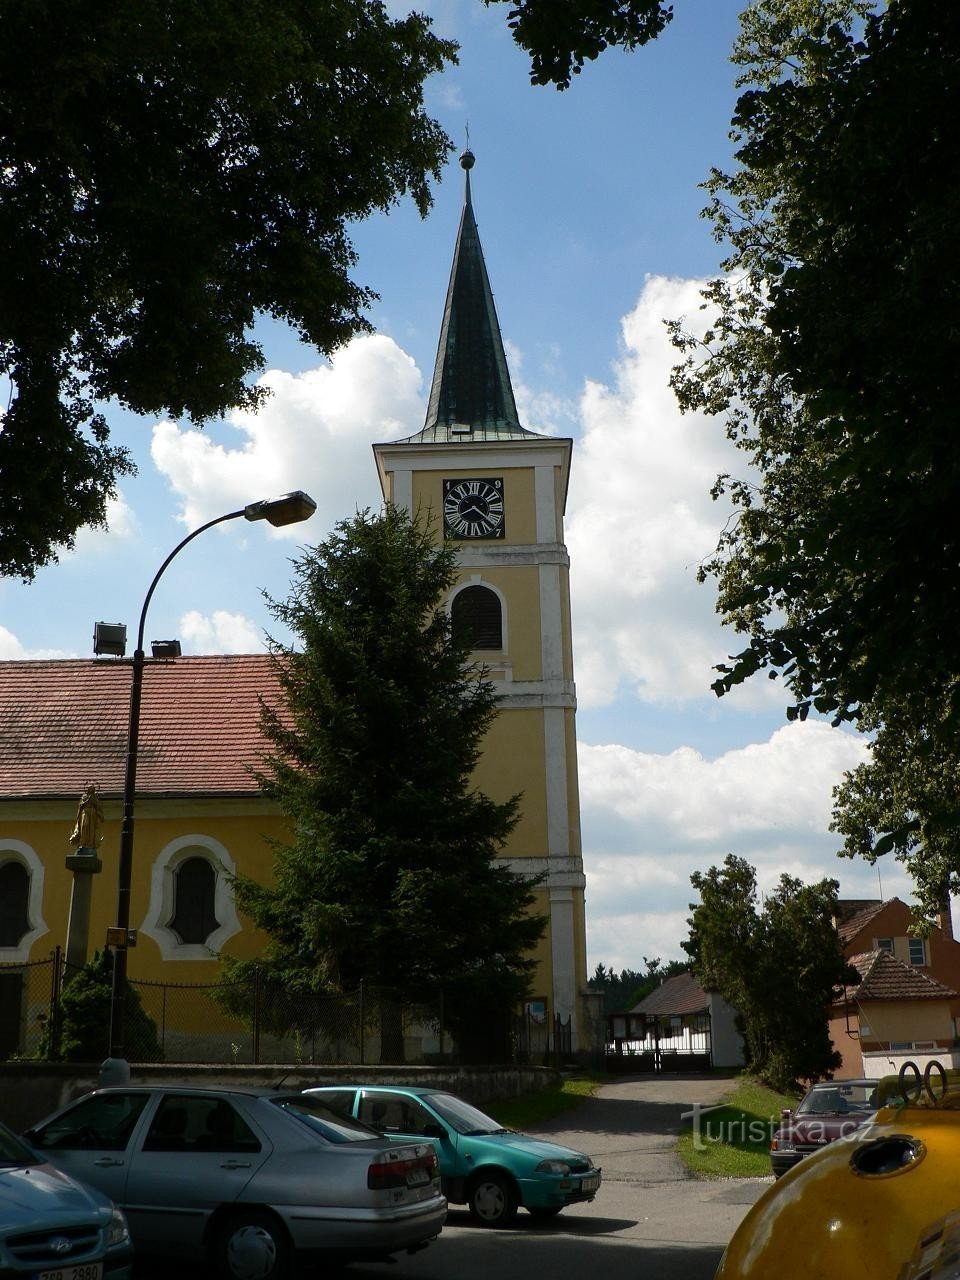 Střelské Hoštice, toranj crkve sv. Martin